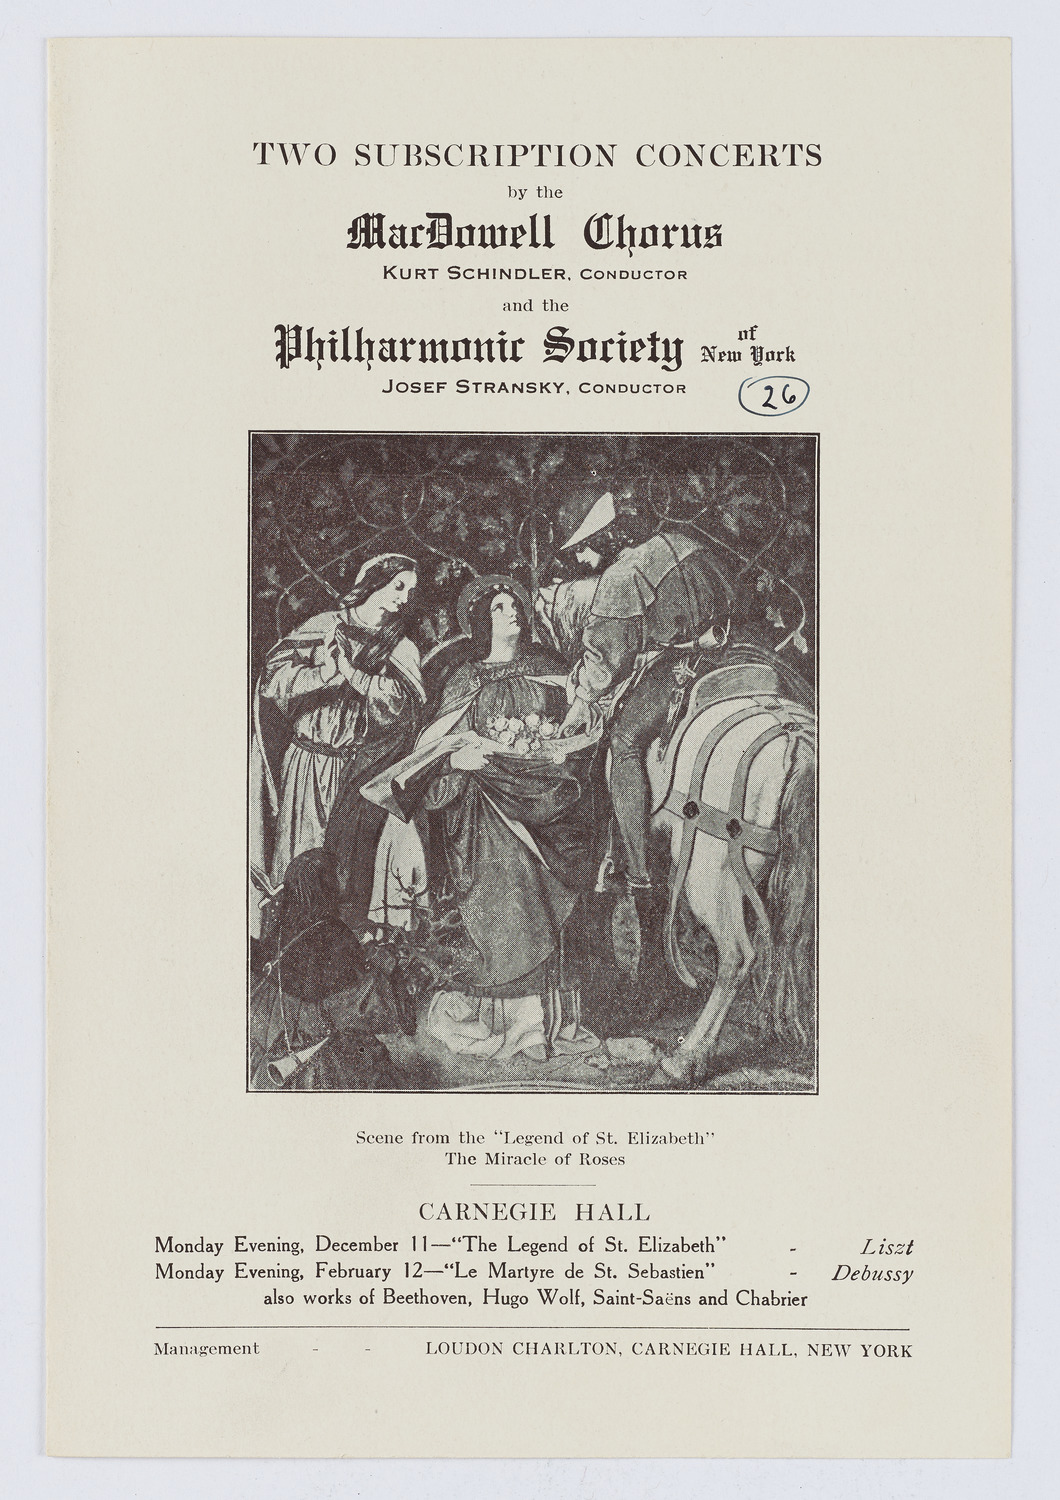 MacDowell Chorus, 1911-1912